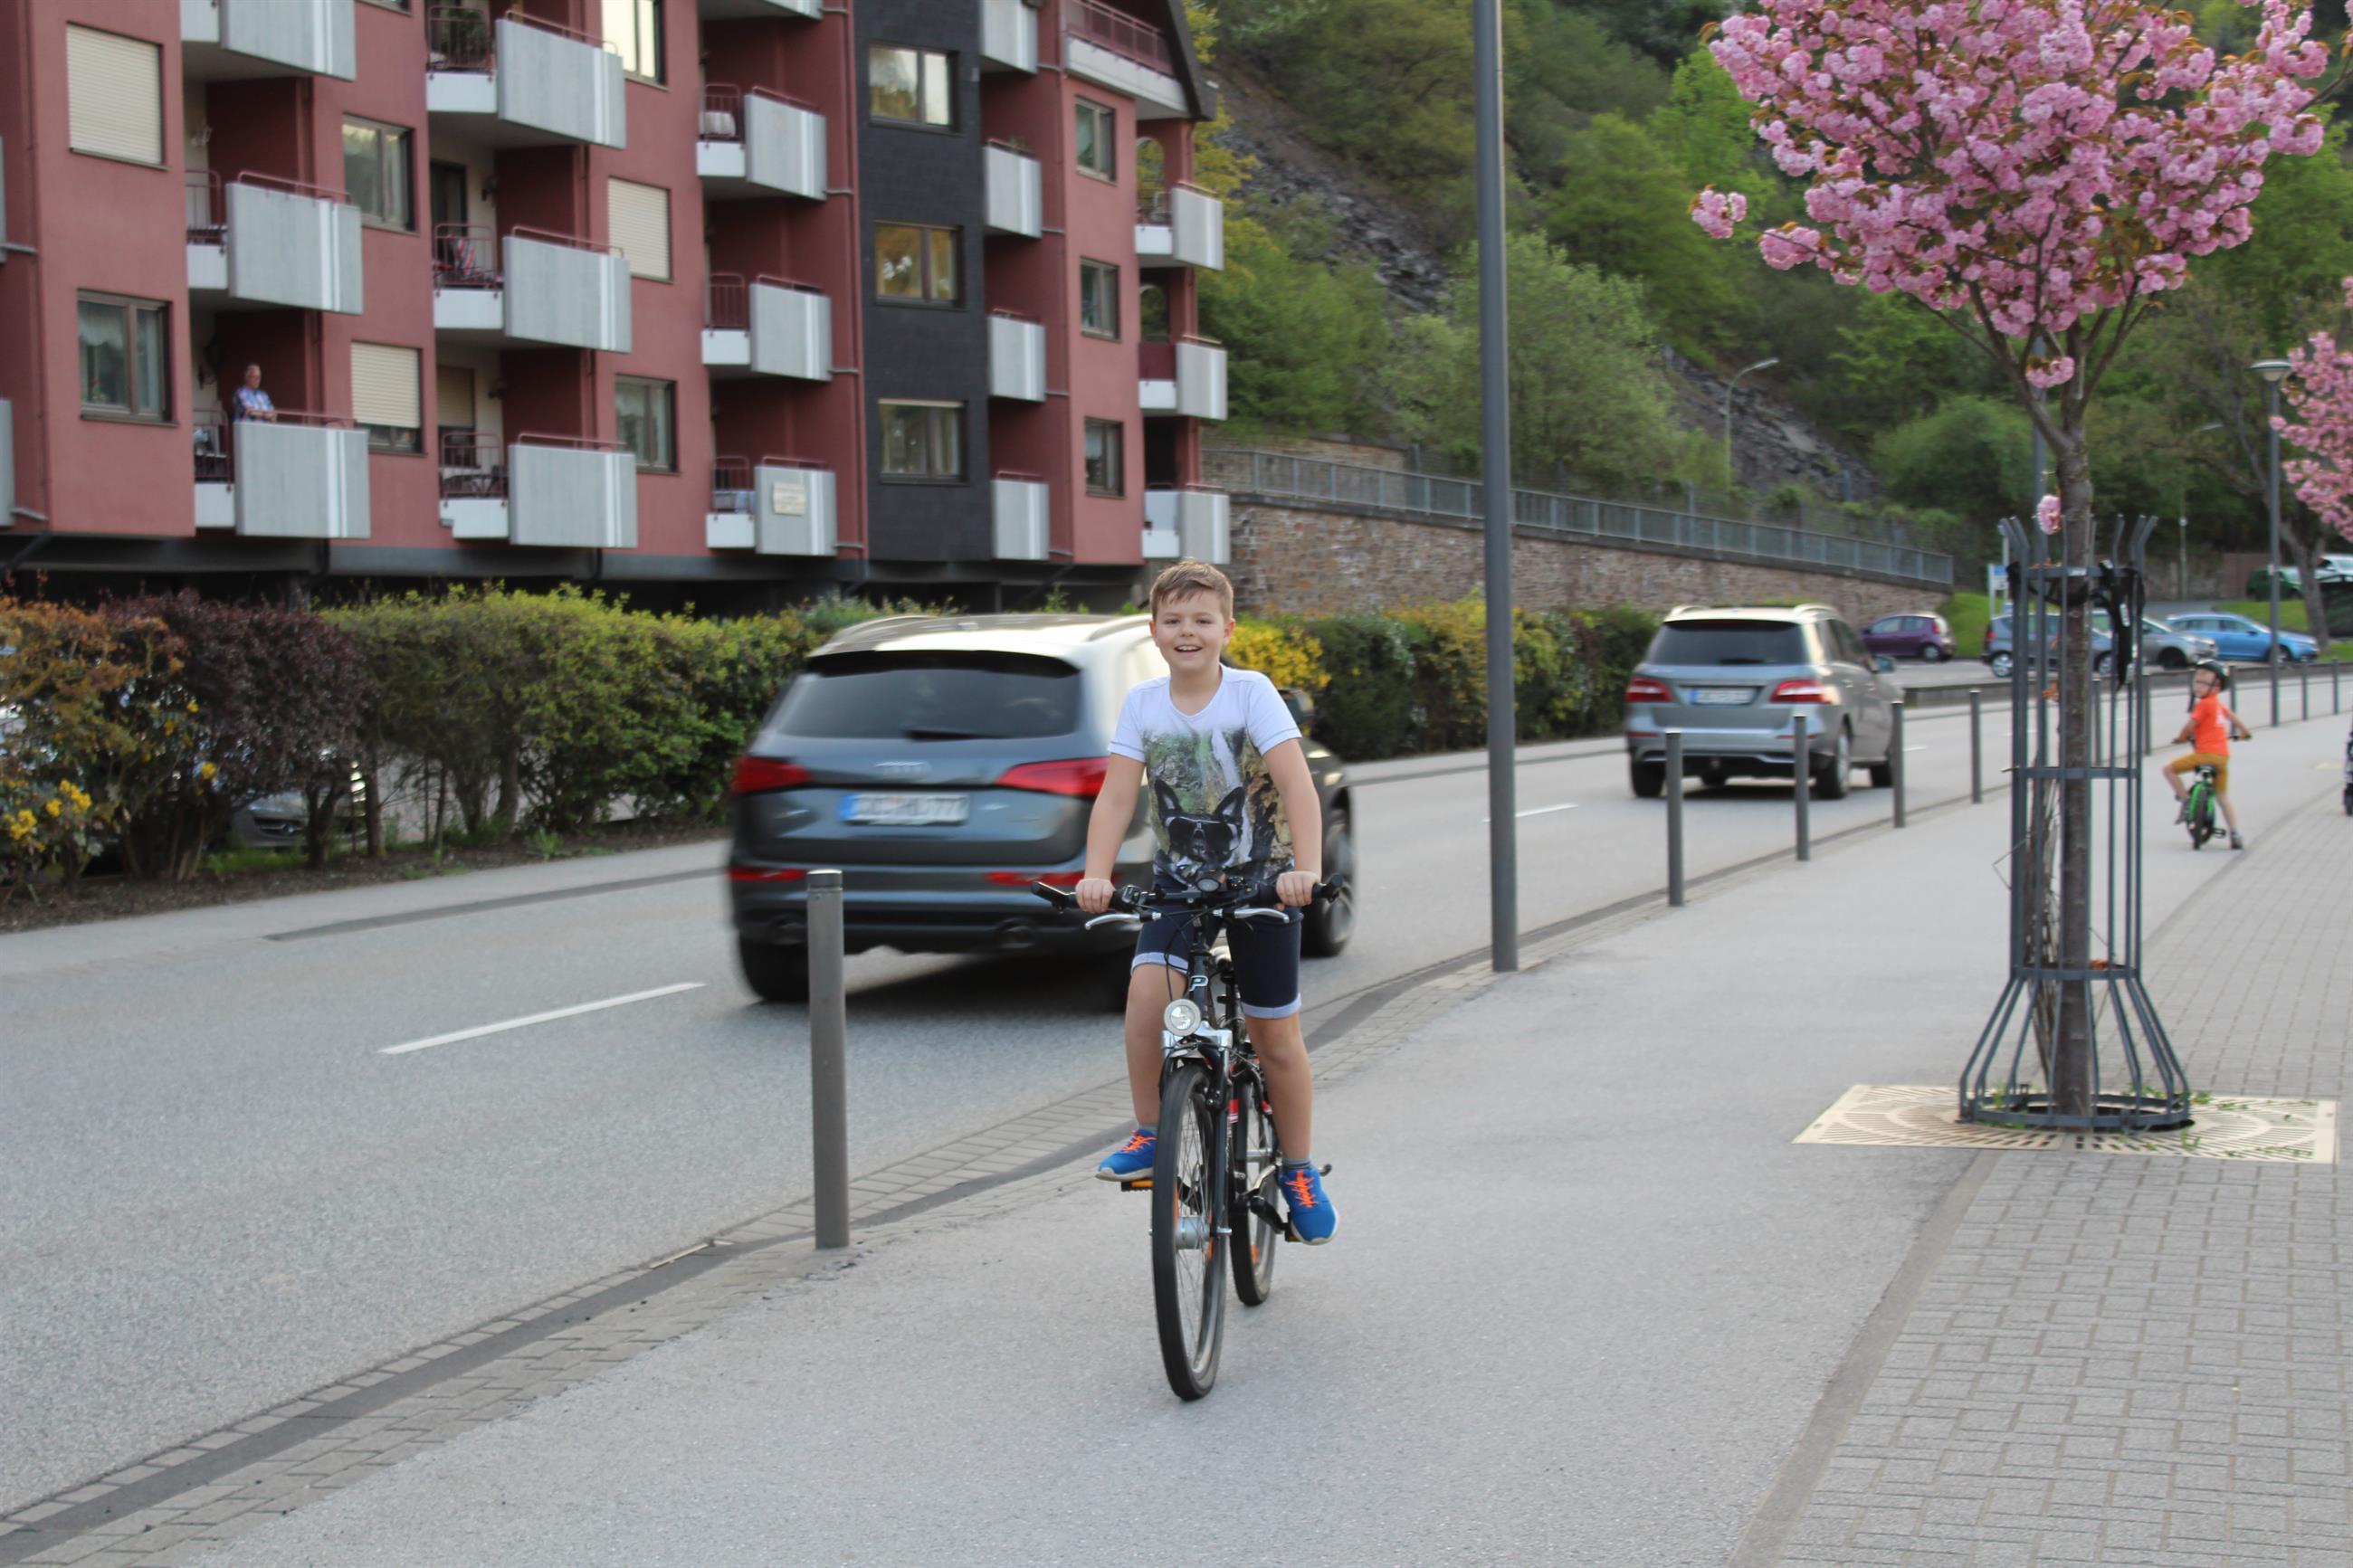 Fahrradverleih vor Ort und Fahrradwege vor Haustür